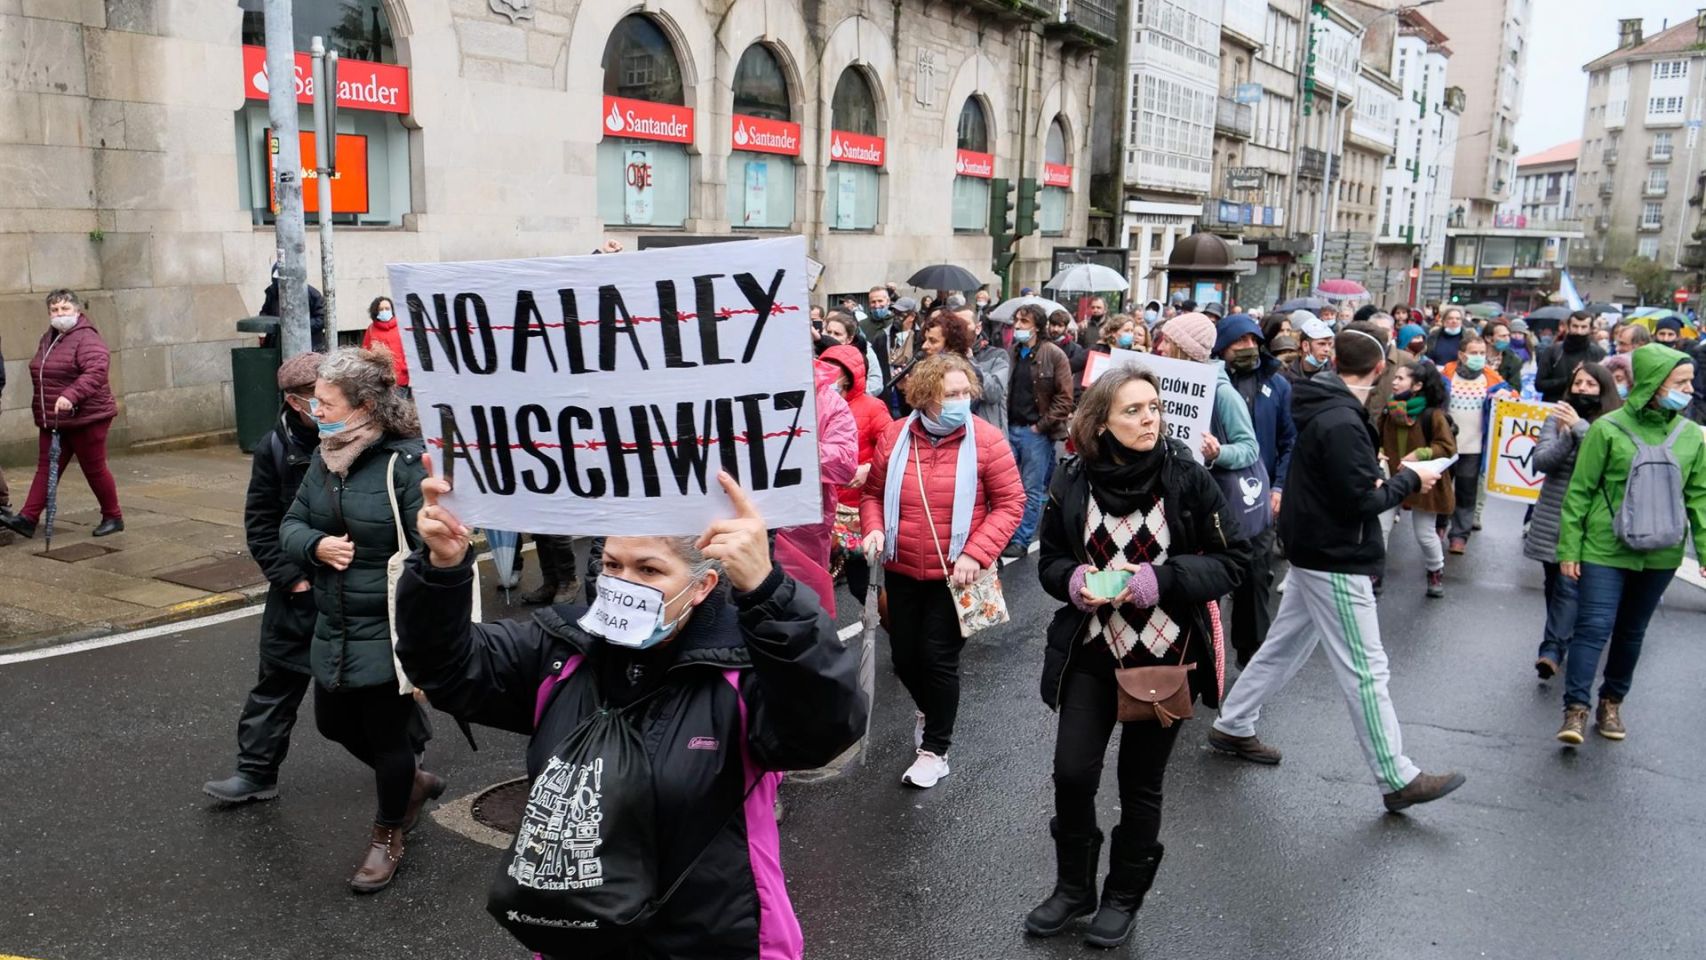 Manifestación contra la conocida como ‘Ley Auschwitz’, en Santiago de Compostela.